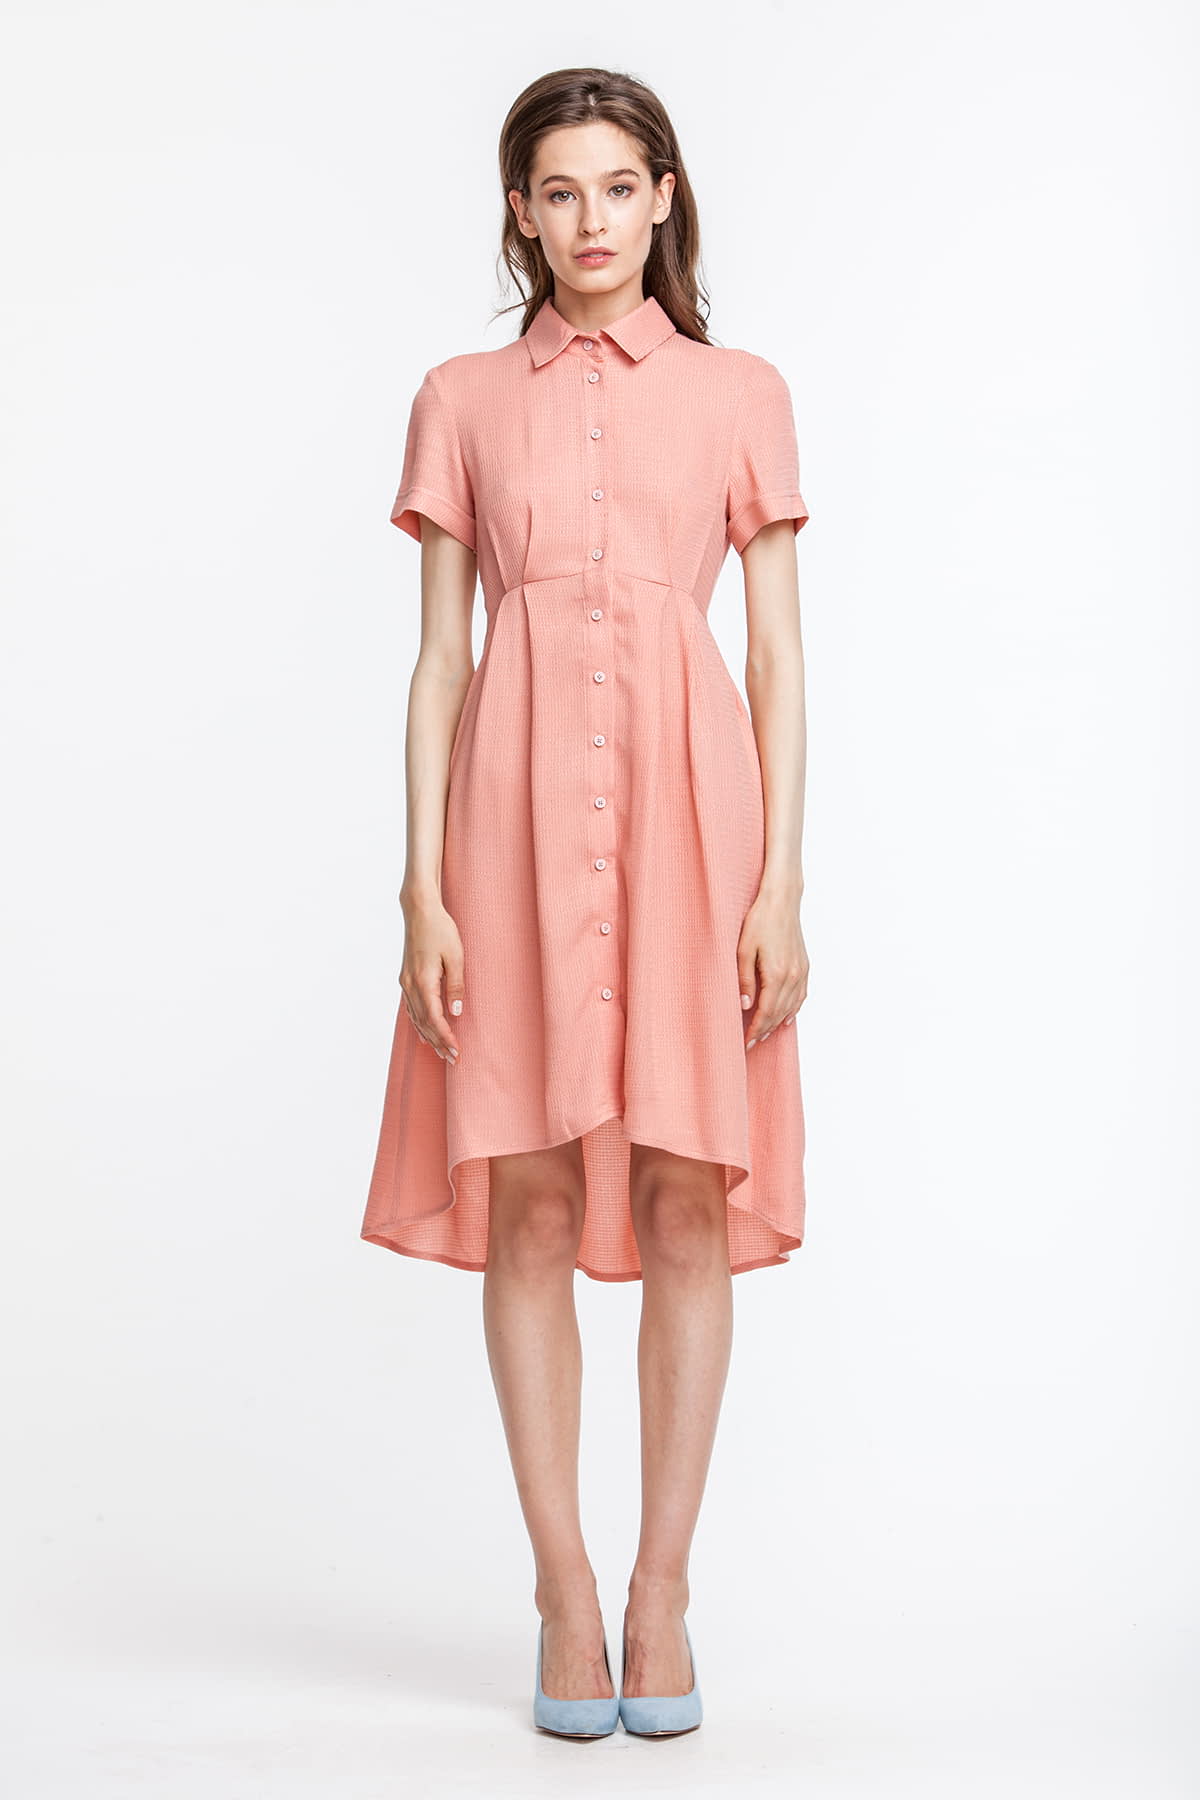 Сукня персикового кольору, з сорочковим верхом, спідниця різної довжини, фото 1